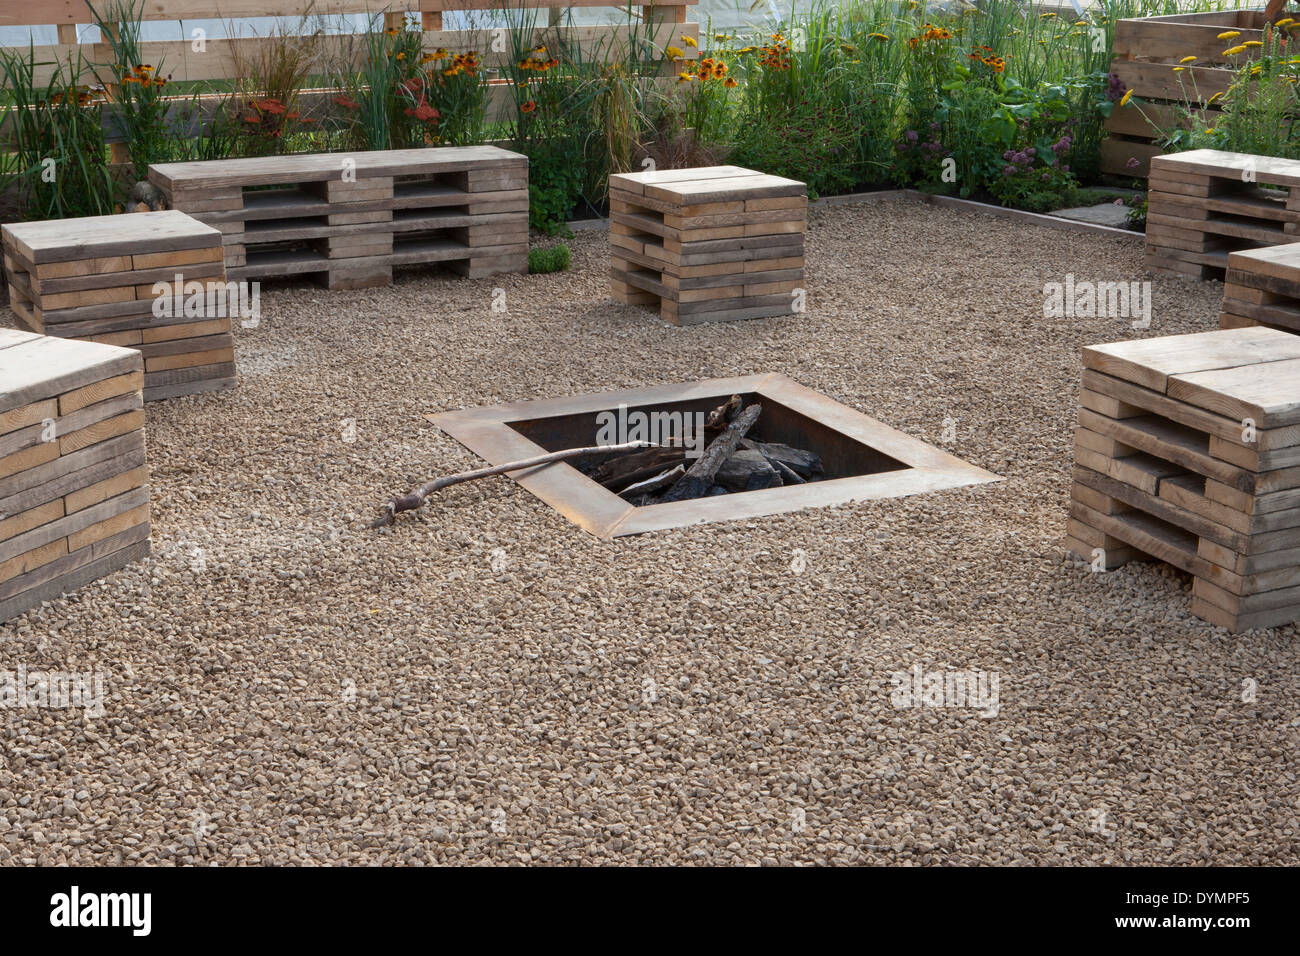 Jardin écologique avec banquettes en matériaux recyclés - palettes dans une zone de gravier avec foyer extérieur à foyer Angleterre Royaume-Uni Banque D'Images